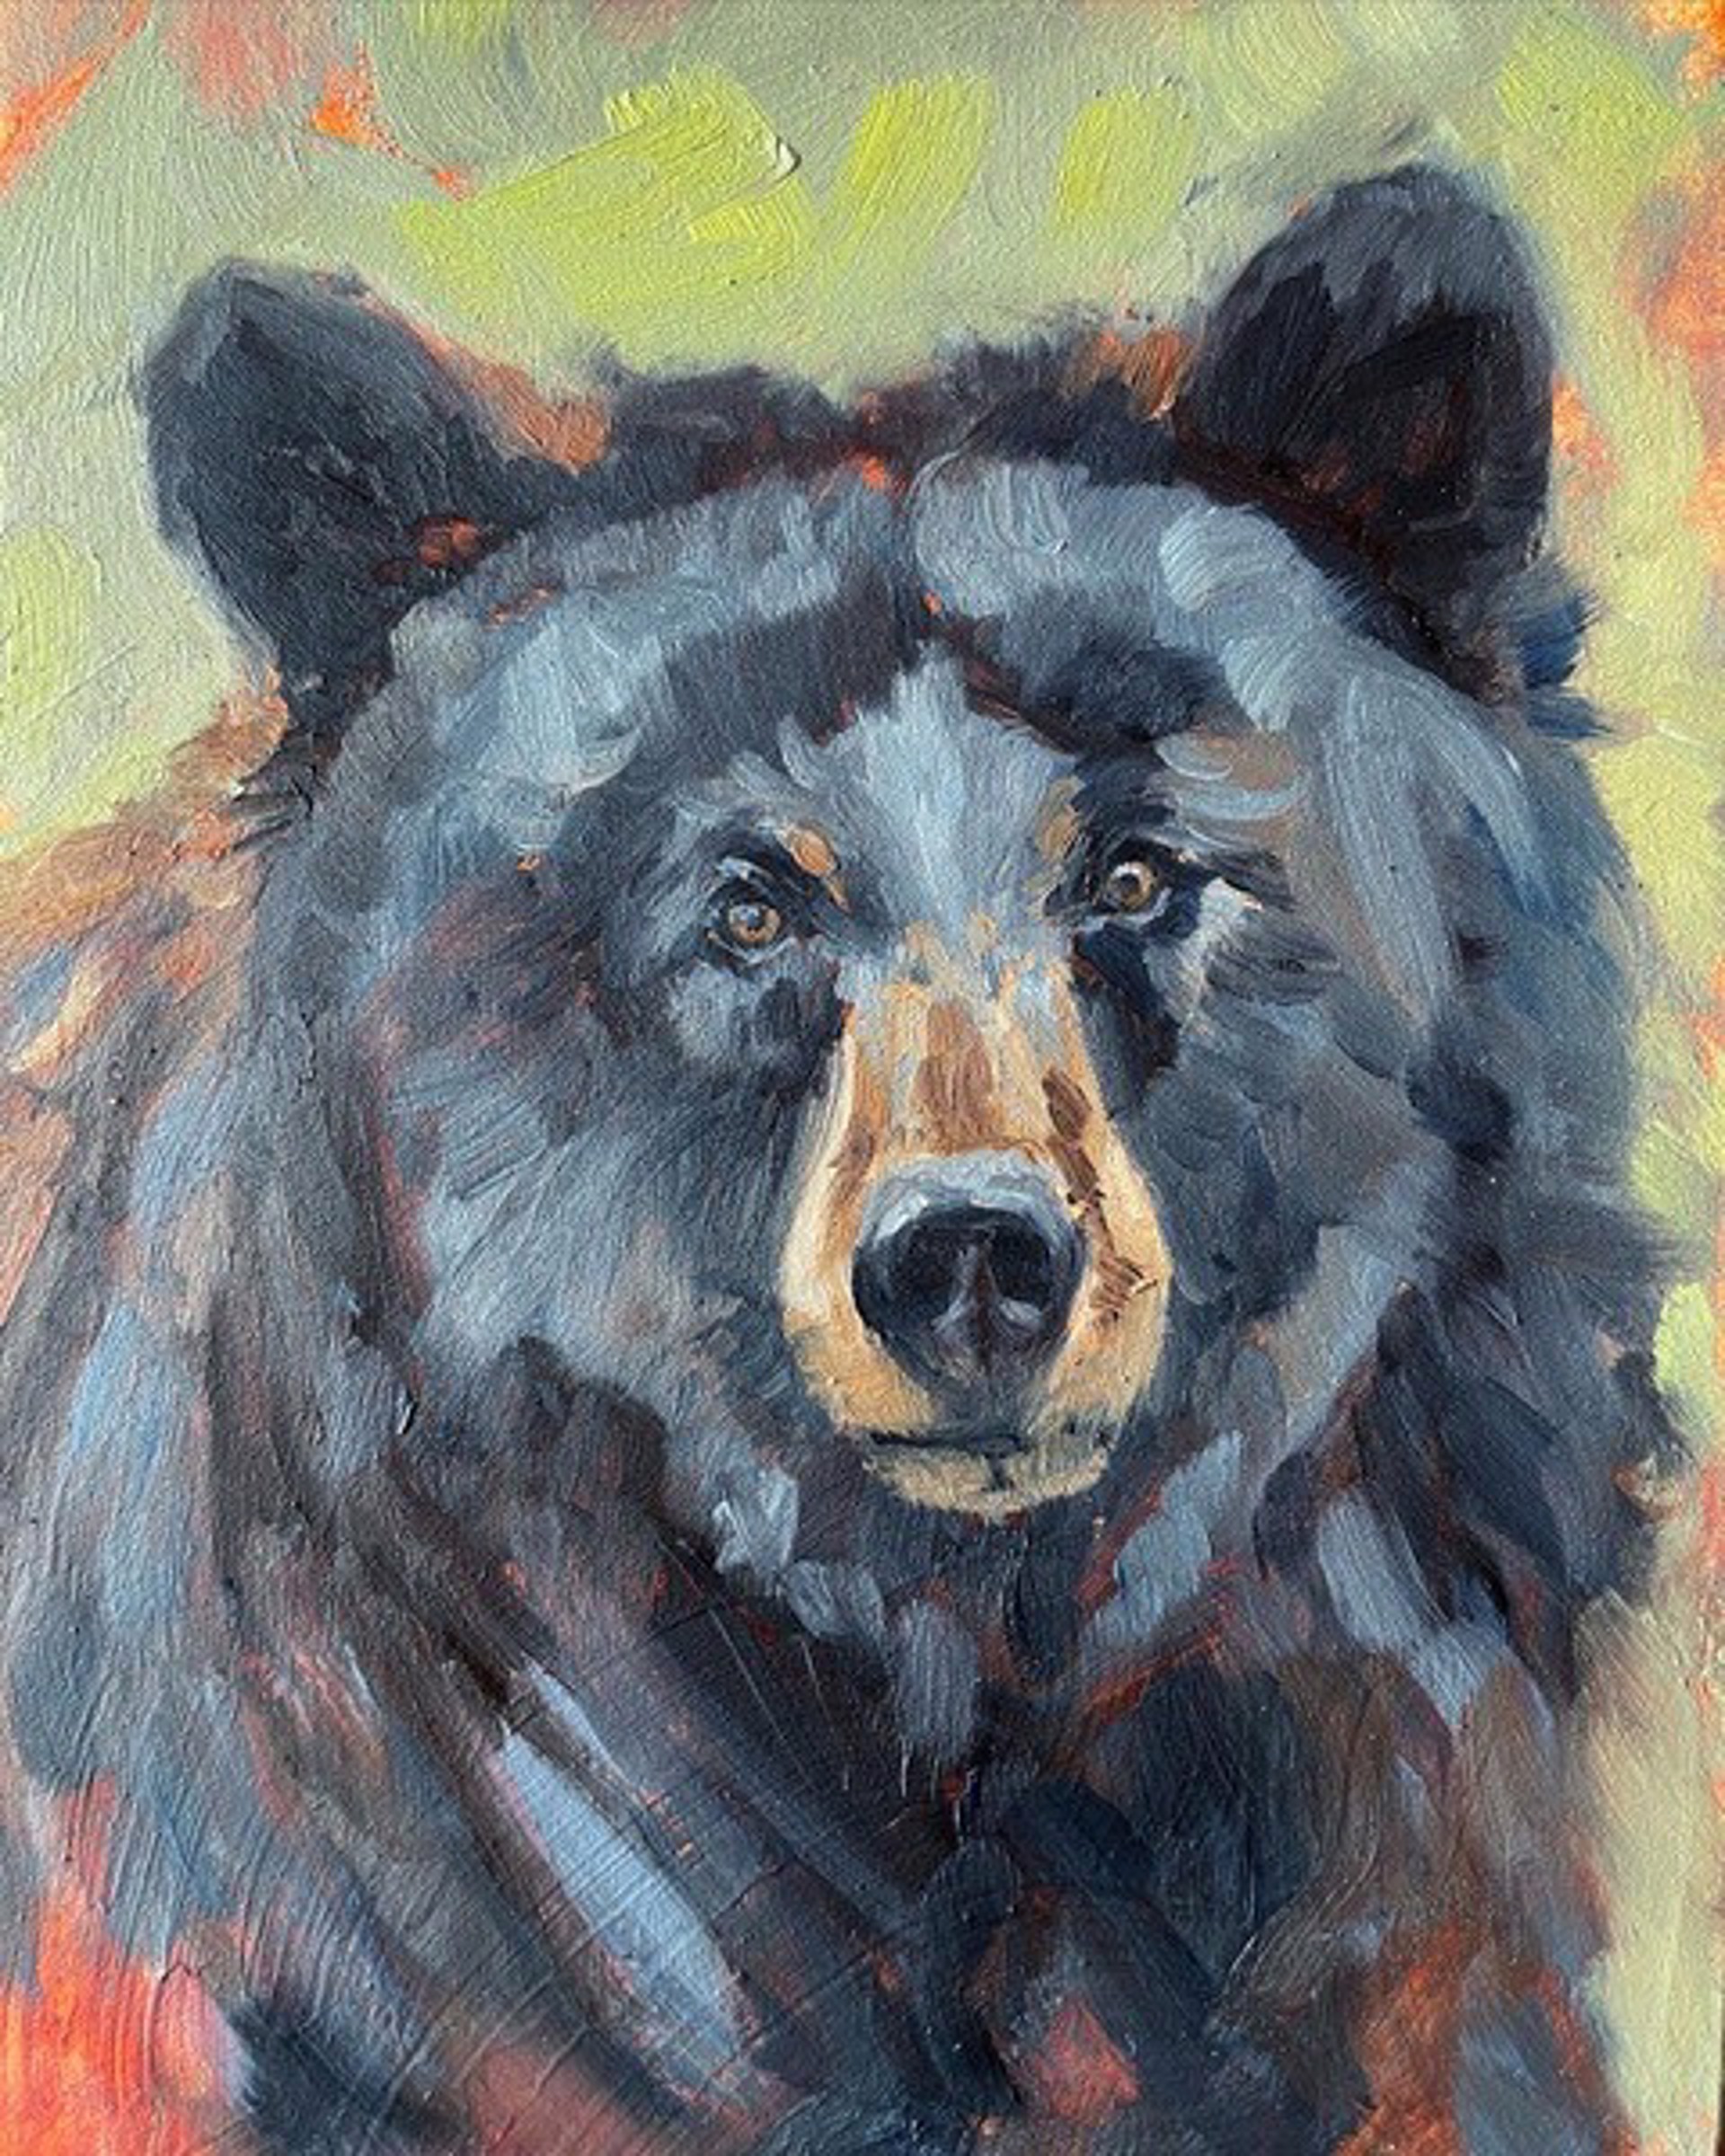 Black Bear Portrait by KINDRIE GROVE